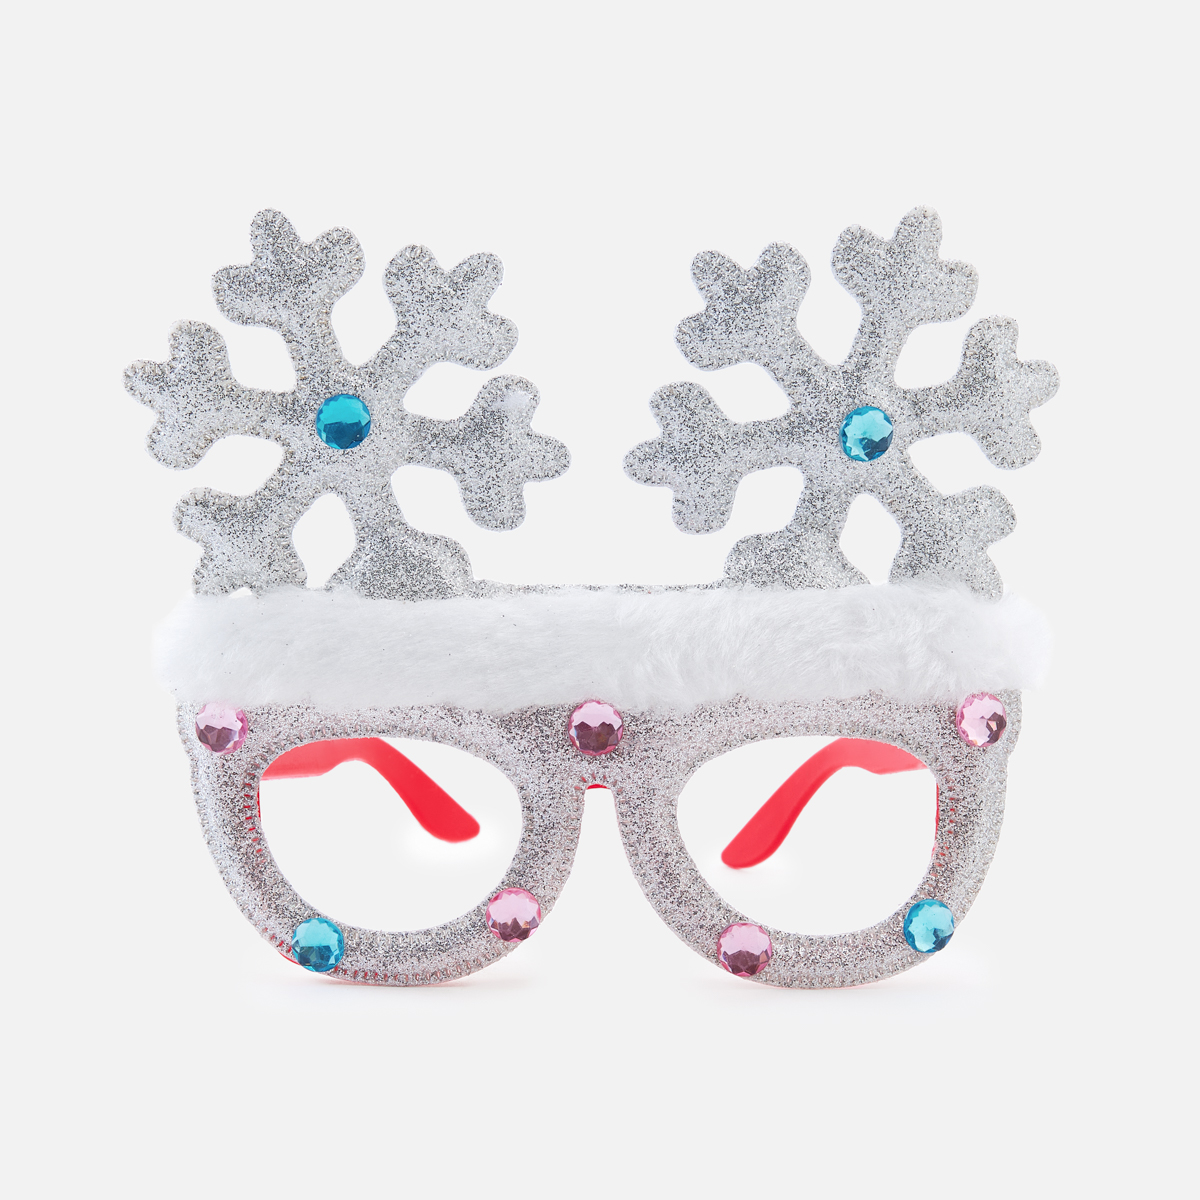 Из Китая: Очки карнавальные Maxprime со снежинками, 15,5x12,5 см